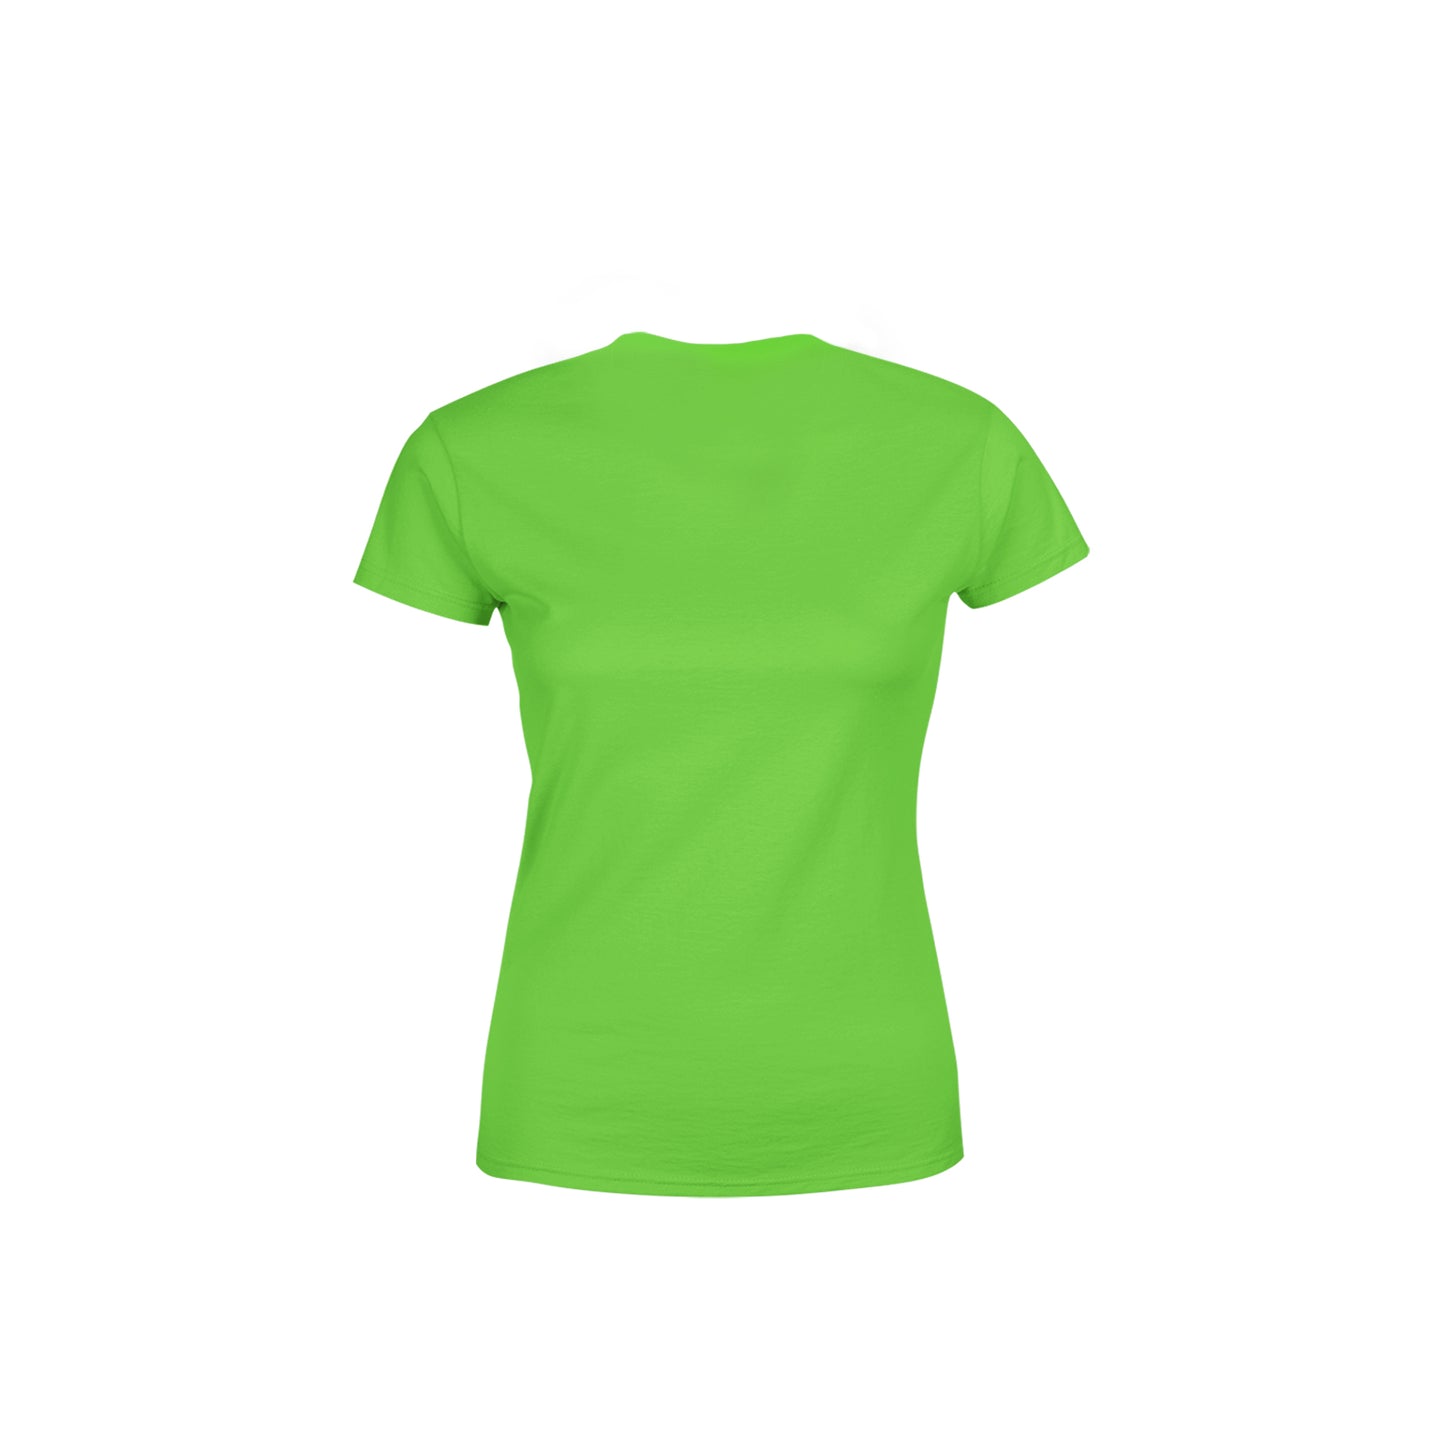 38 Number Women's T-Shirt (Liril Green)